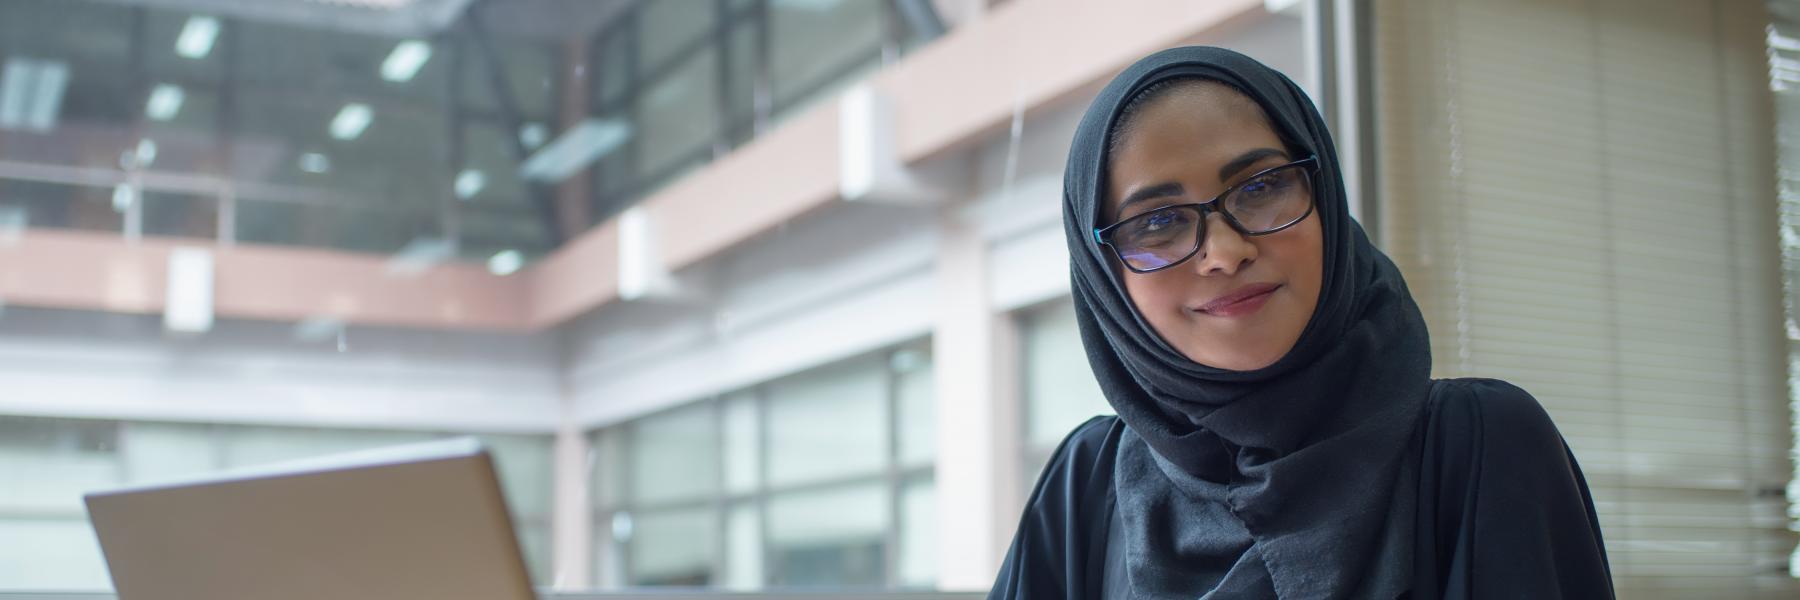 11 إمراة عربية ضمن قائمة "بي بي سي" لأكثر النساء تأثيرًا في 2020 